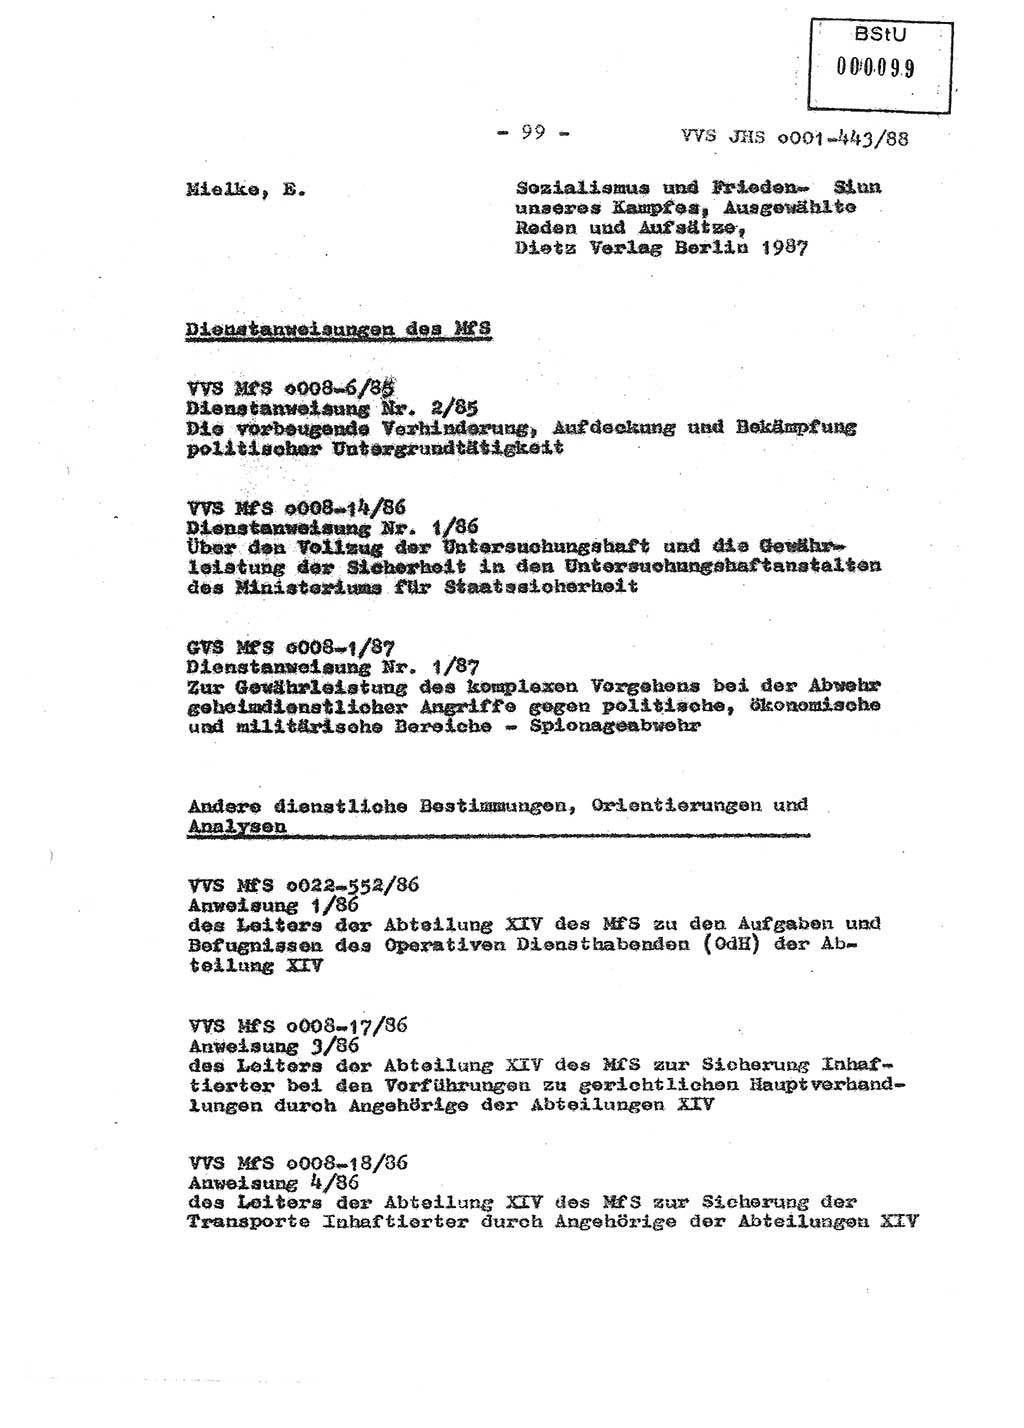 Diplomarbeit Hauptmann Michael Rast (Abt. ⅩⅣ), Major Bernd Rahaus (Abt. ⅩⅣ), Ministerium für Staatssicherheit (MfS) [Deutsche Demokratische Republik (DDR)], Juristische Hochschule (JHS), Vertrauliche Verschlußsache (VVS) o001-443/88, Potsdam 1988, Seite 99 (Dipl.-Arb. MfS DDR JHS VVS o001-443/88 1988, S. 99)